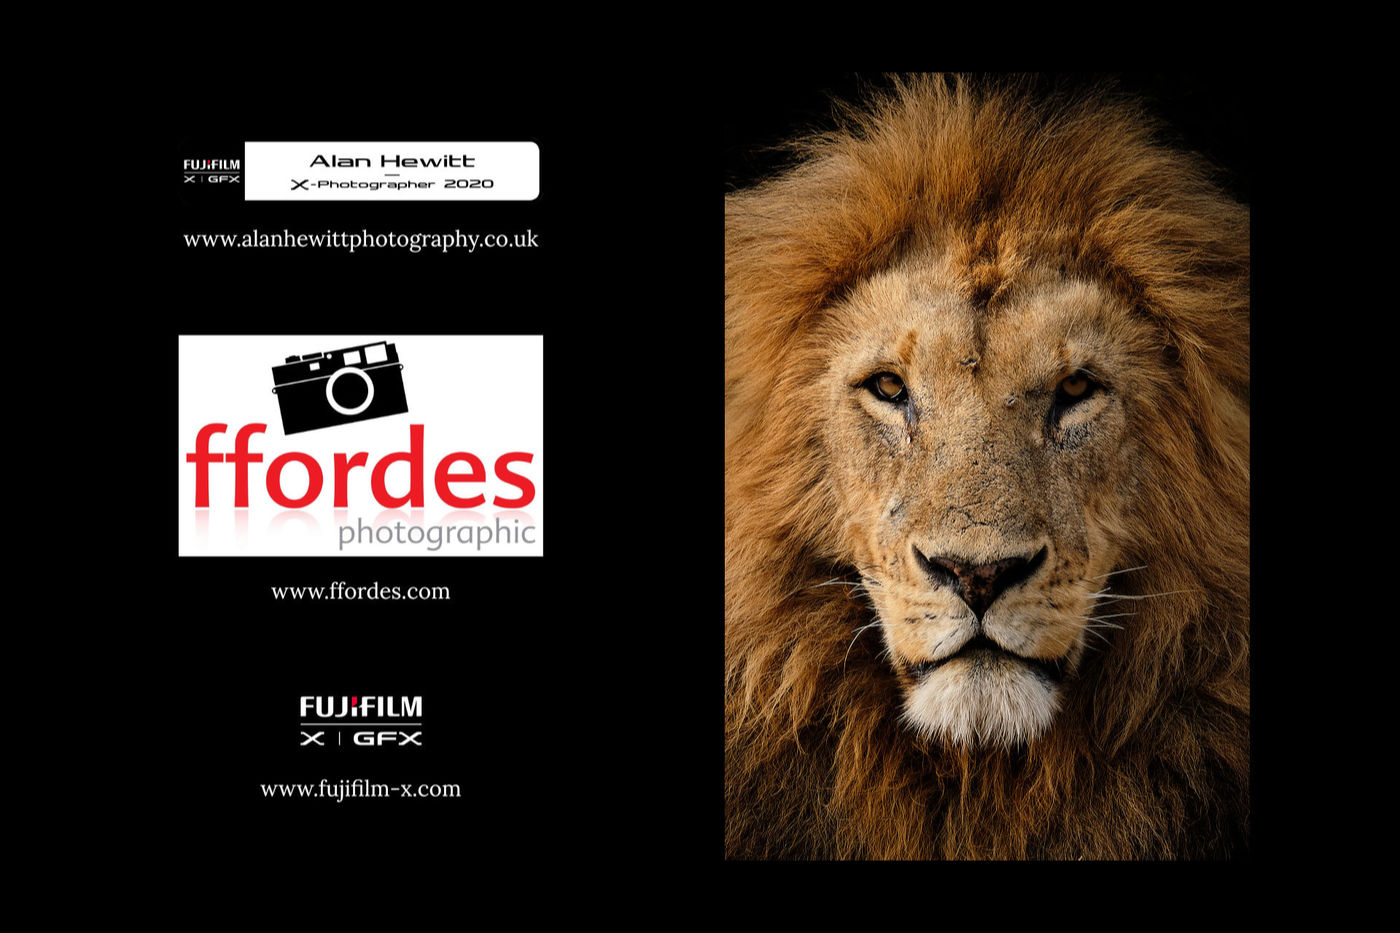 Alan Hewitt Fujifilm UK Ffordes Photographic